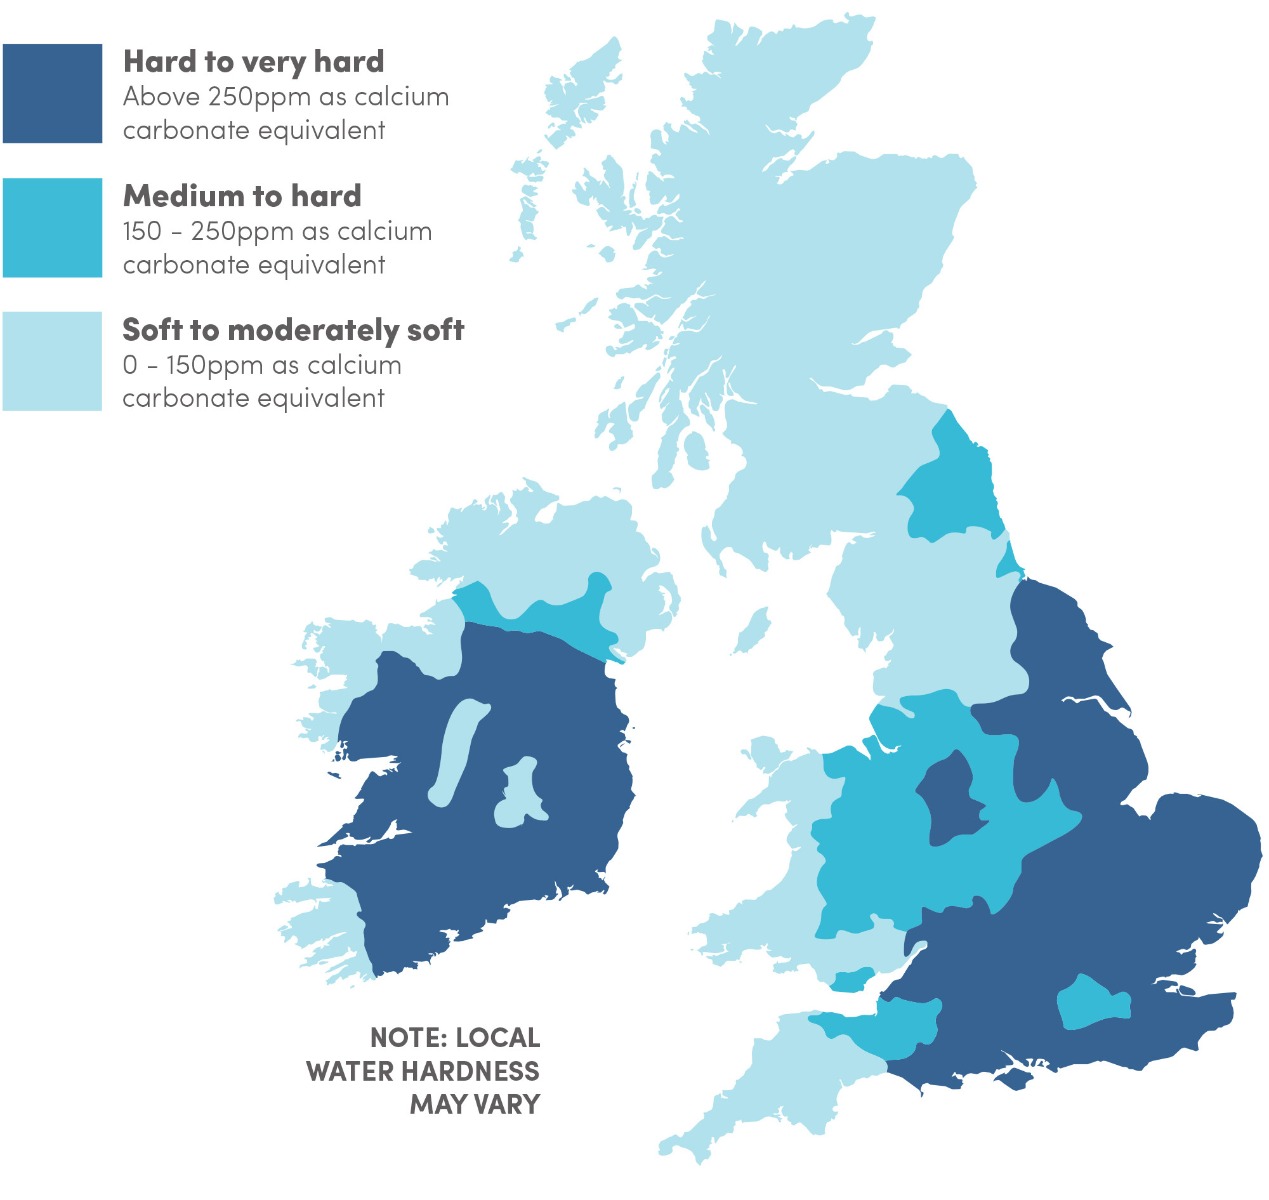 Water hardness map of UK